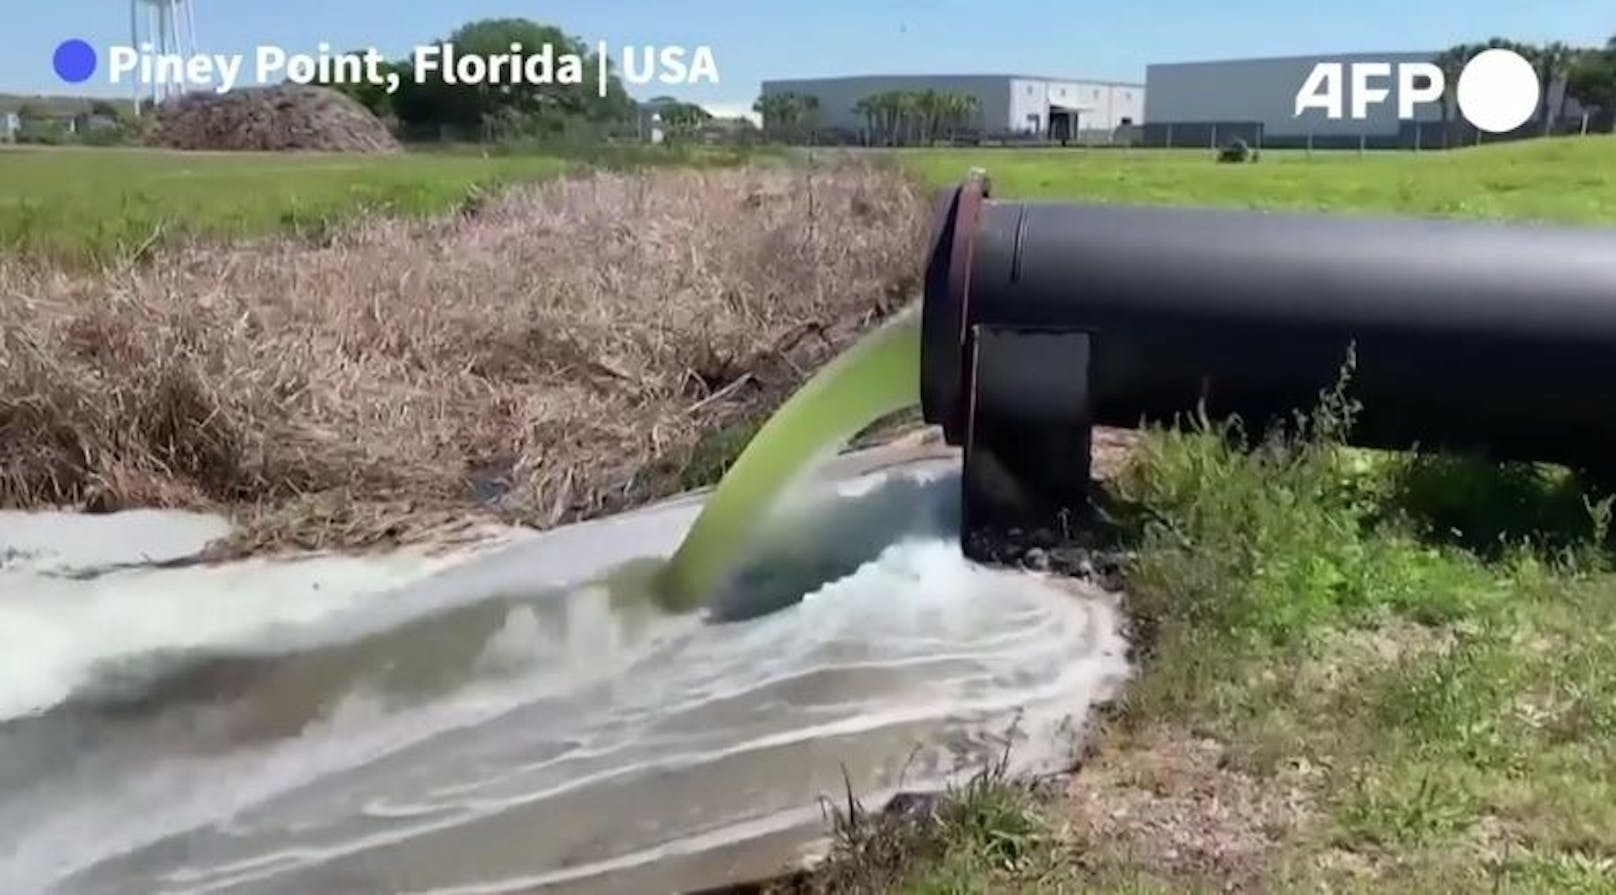 Wegen eines undichten Abwasserbeckens haben im US-Bundesstaat Florida die Nationalgarde und andere Einsatzkräfte daran gearbeitet, eine Umweltkatastrophe abzuwenden.